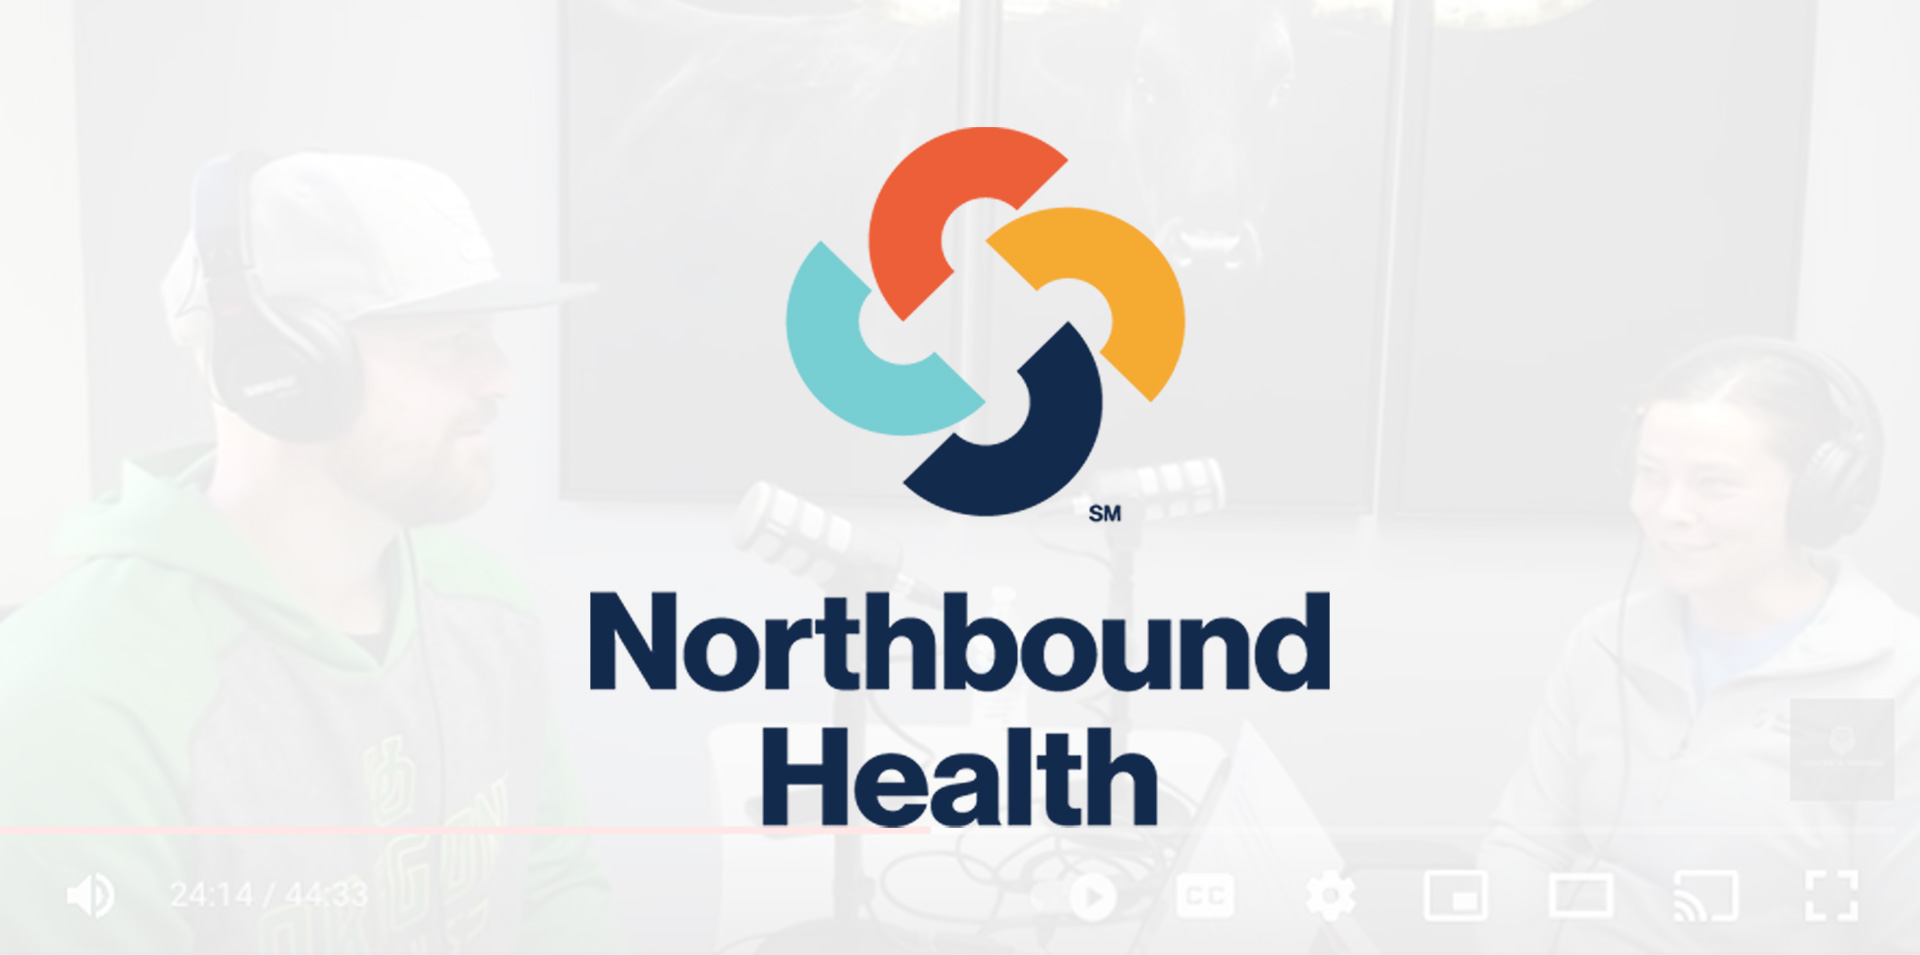 Northbound_Health_Healthcare_Blog_Interview_Nora_Foster_24Nov21_1920x955